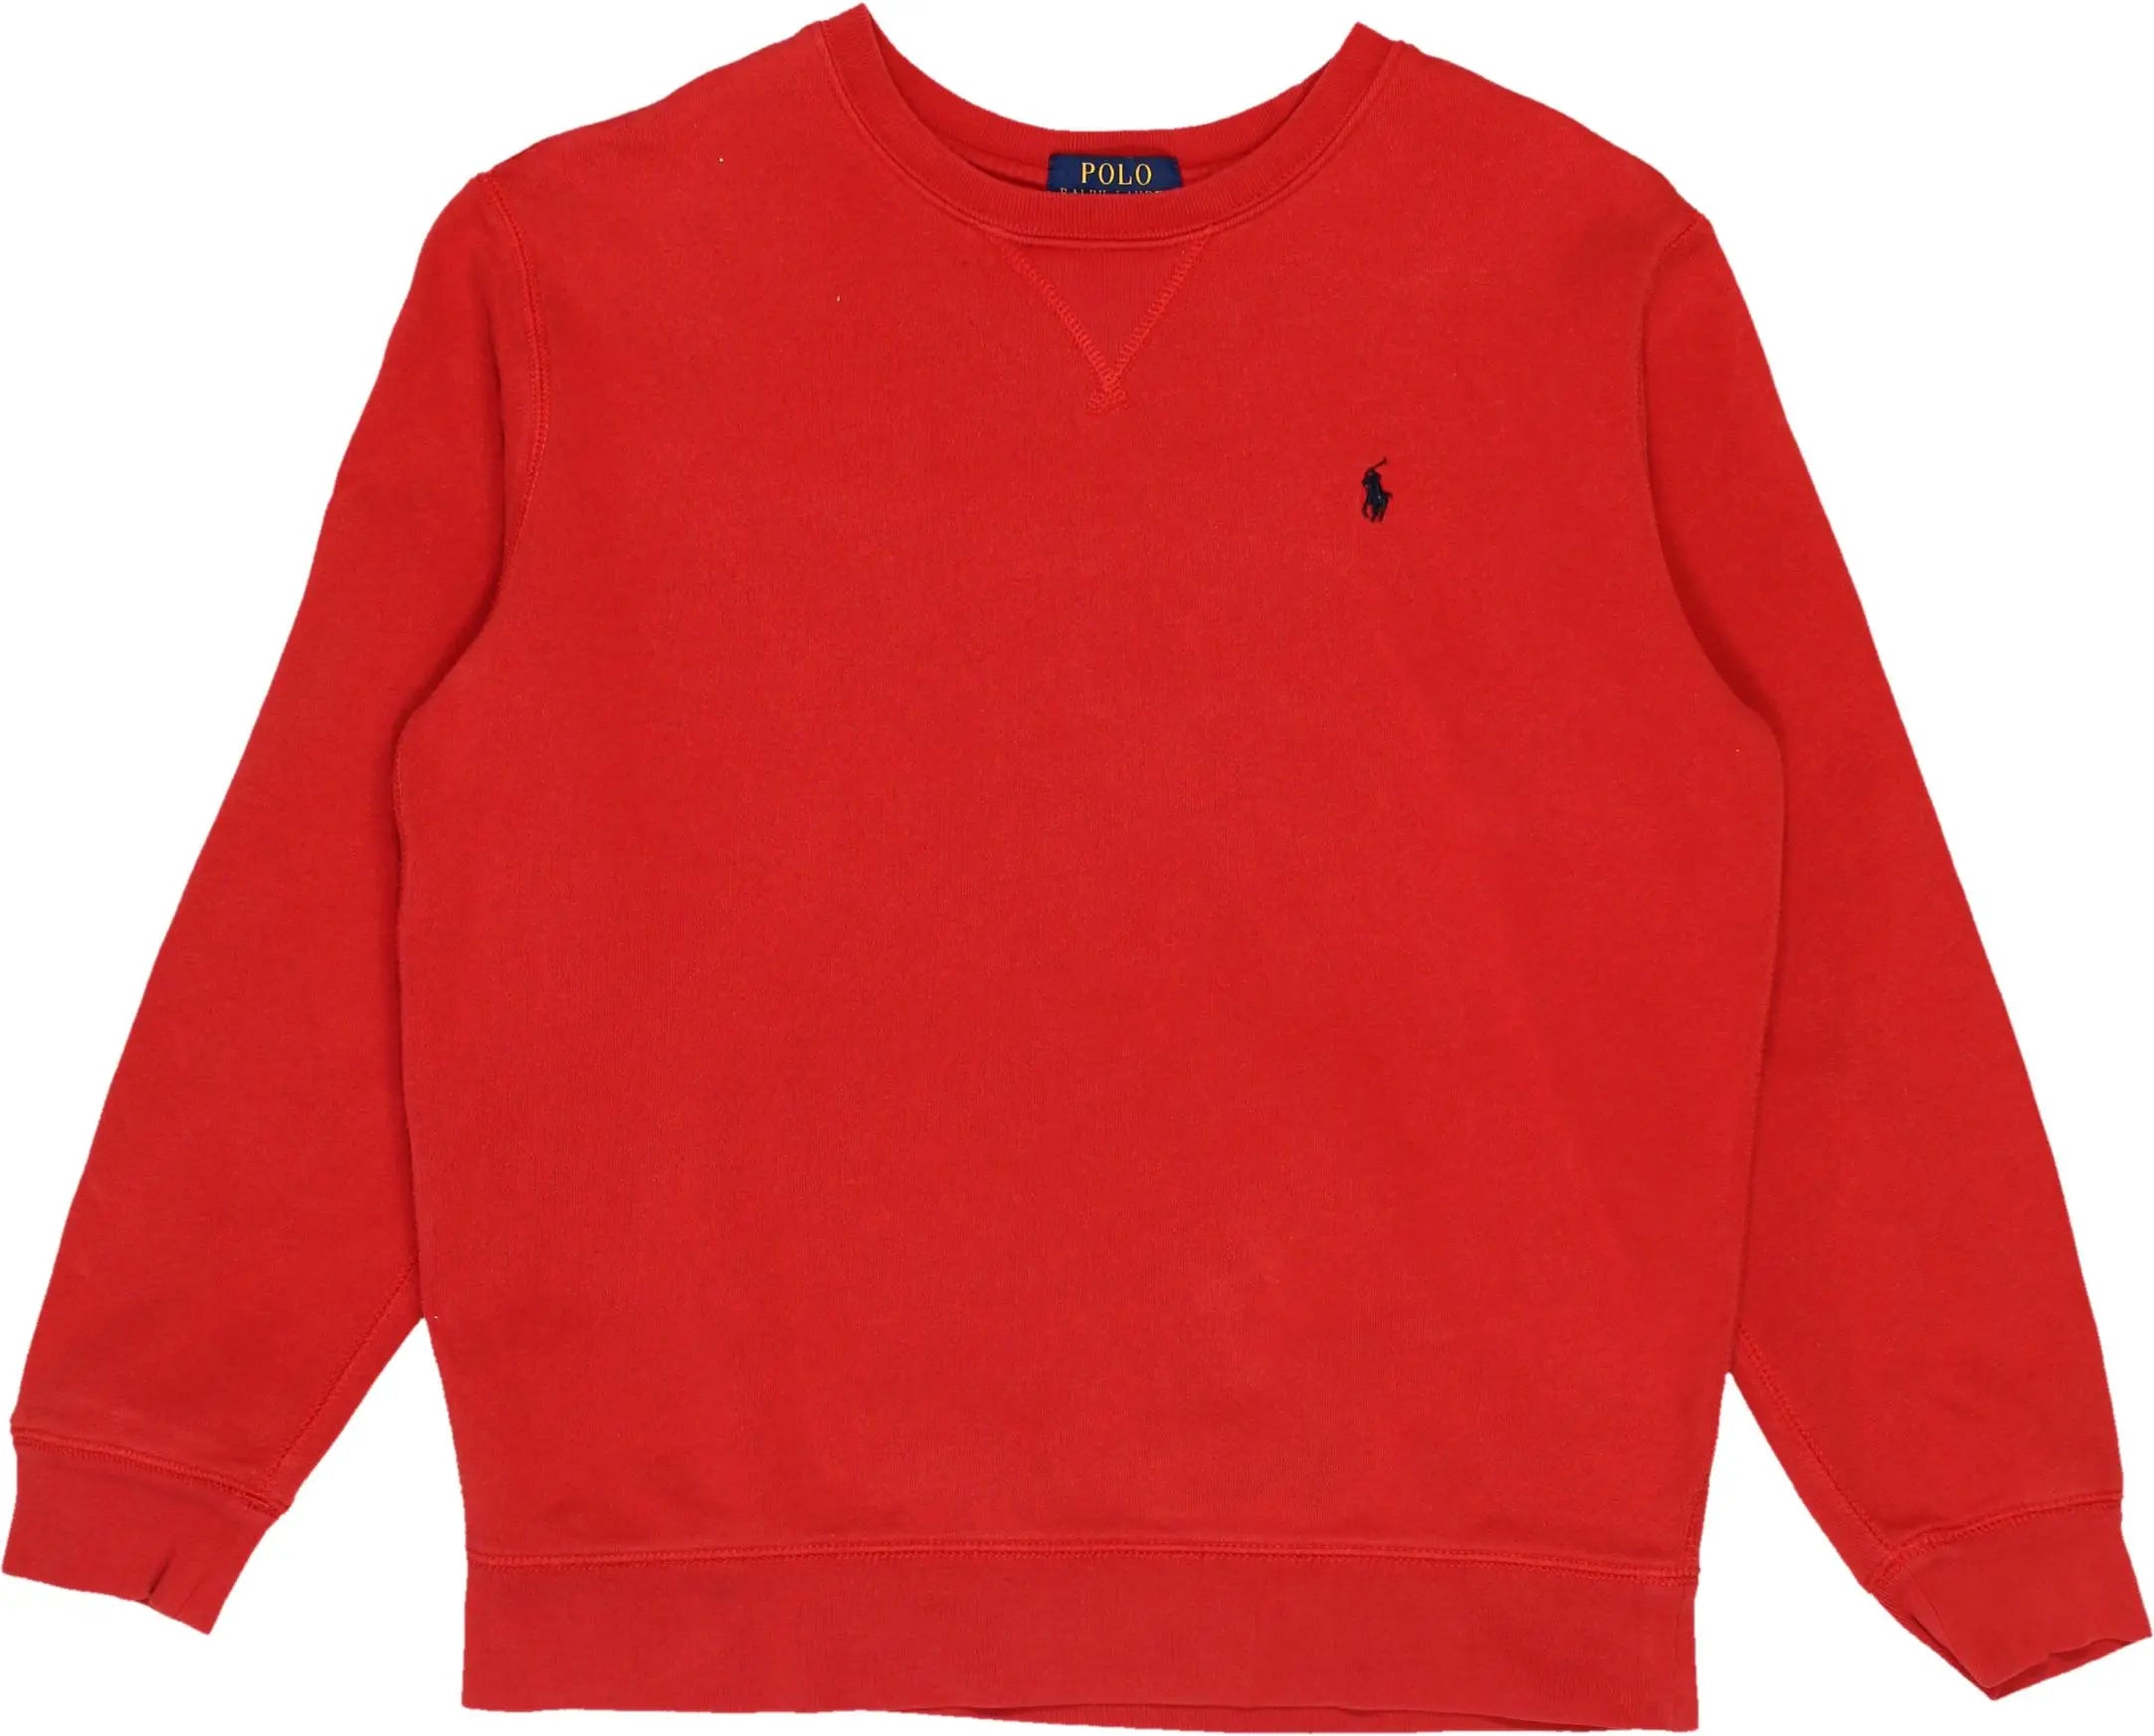 Ralph Lauren - Ralph Lauren Sweater- ThriftTale.com - Vintage and second handclothing